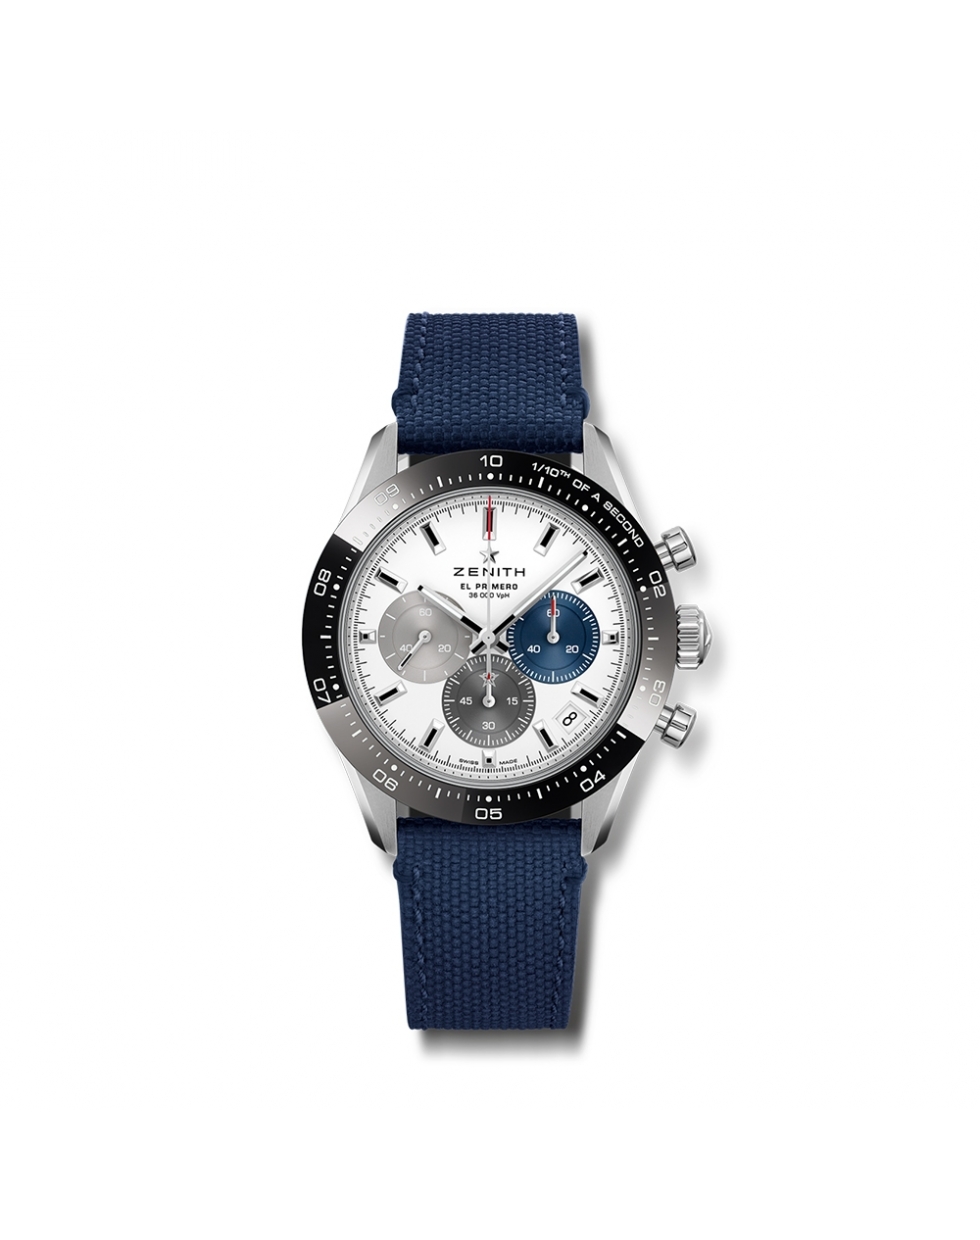 Montre Zenith Chronomaster Sport automatique cadran blanc mat bracelet caoutchouc bleu 41 mm